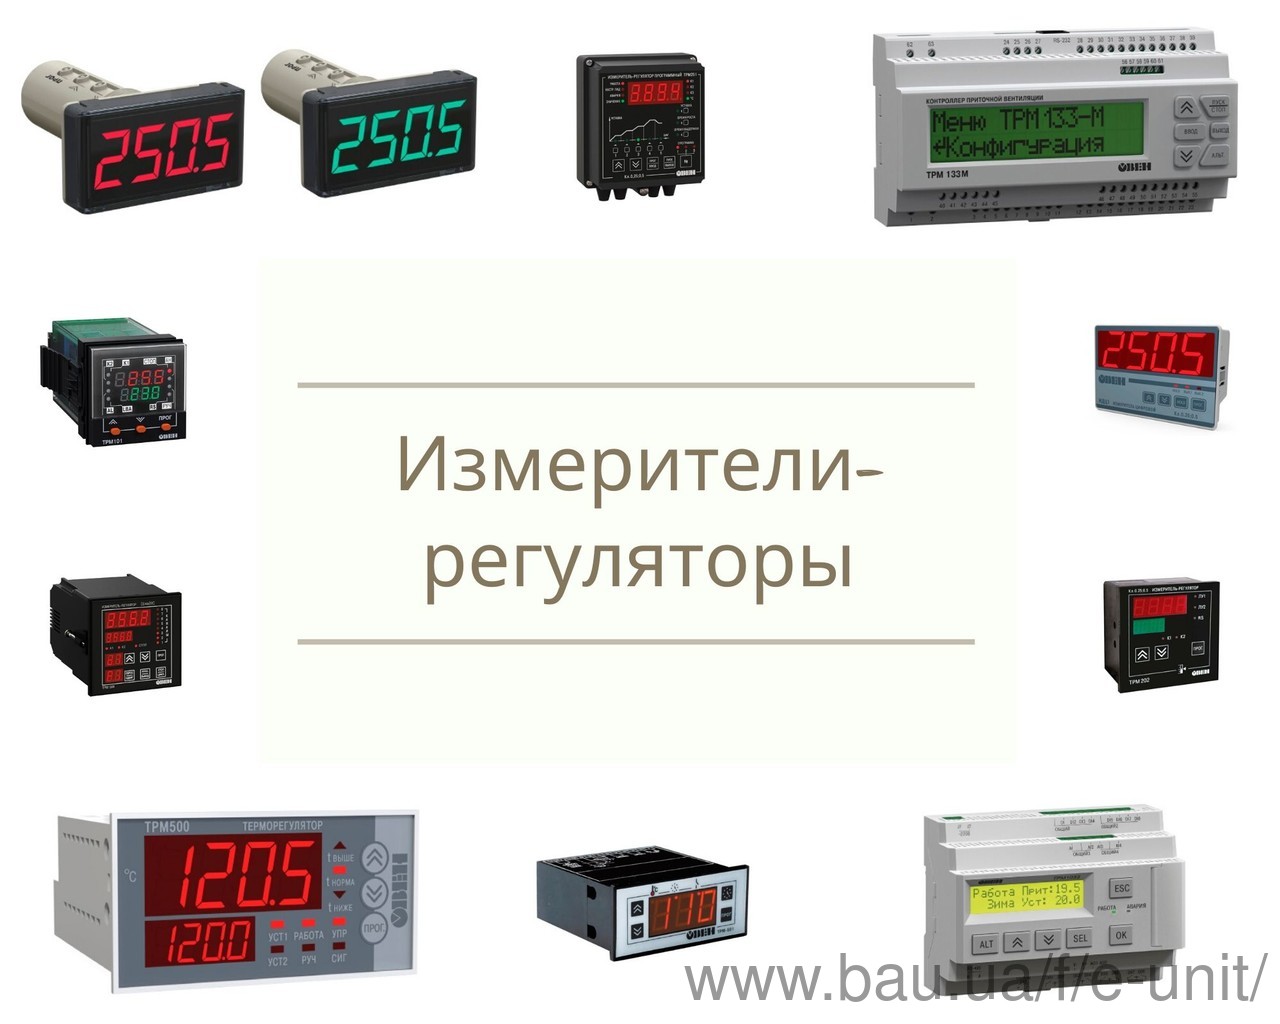 Измерители-регуляторы появились в ассортименте компании Электроюнит